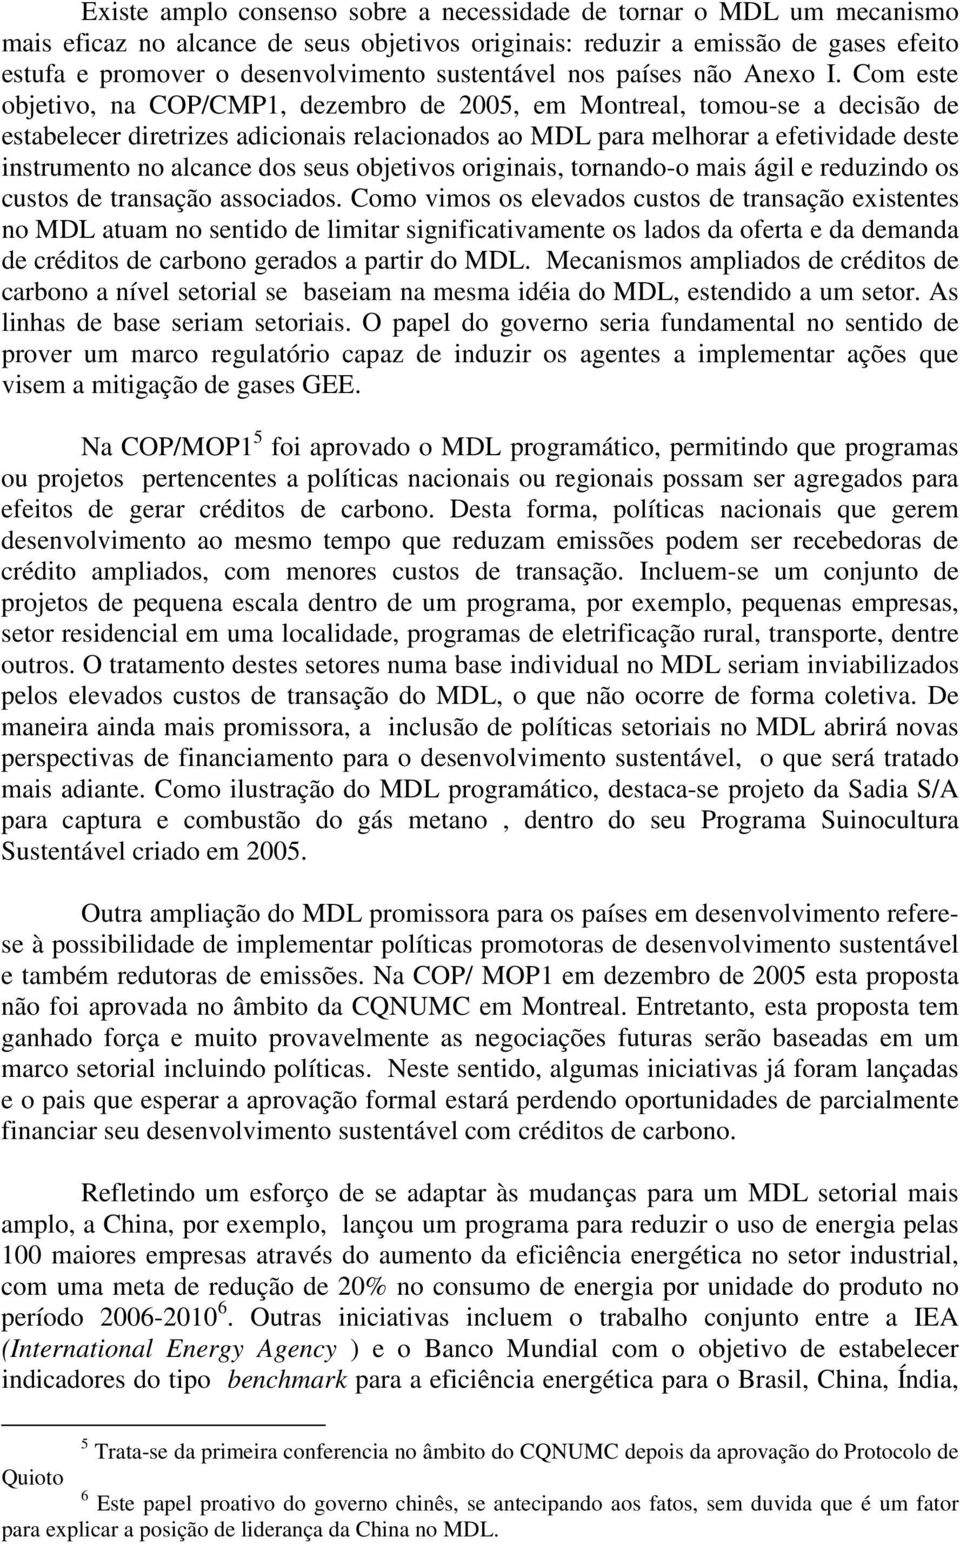 Com este objetivo, na COP/CMP1, dezembro de 2005, em Montreal, tomou-se a decisão de estabelecer diretrizes adicionais relacionados ao MDL para melhorar a efetividade deste instrumento no alcance dos